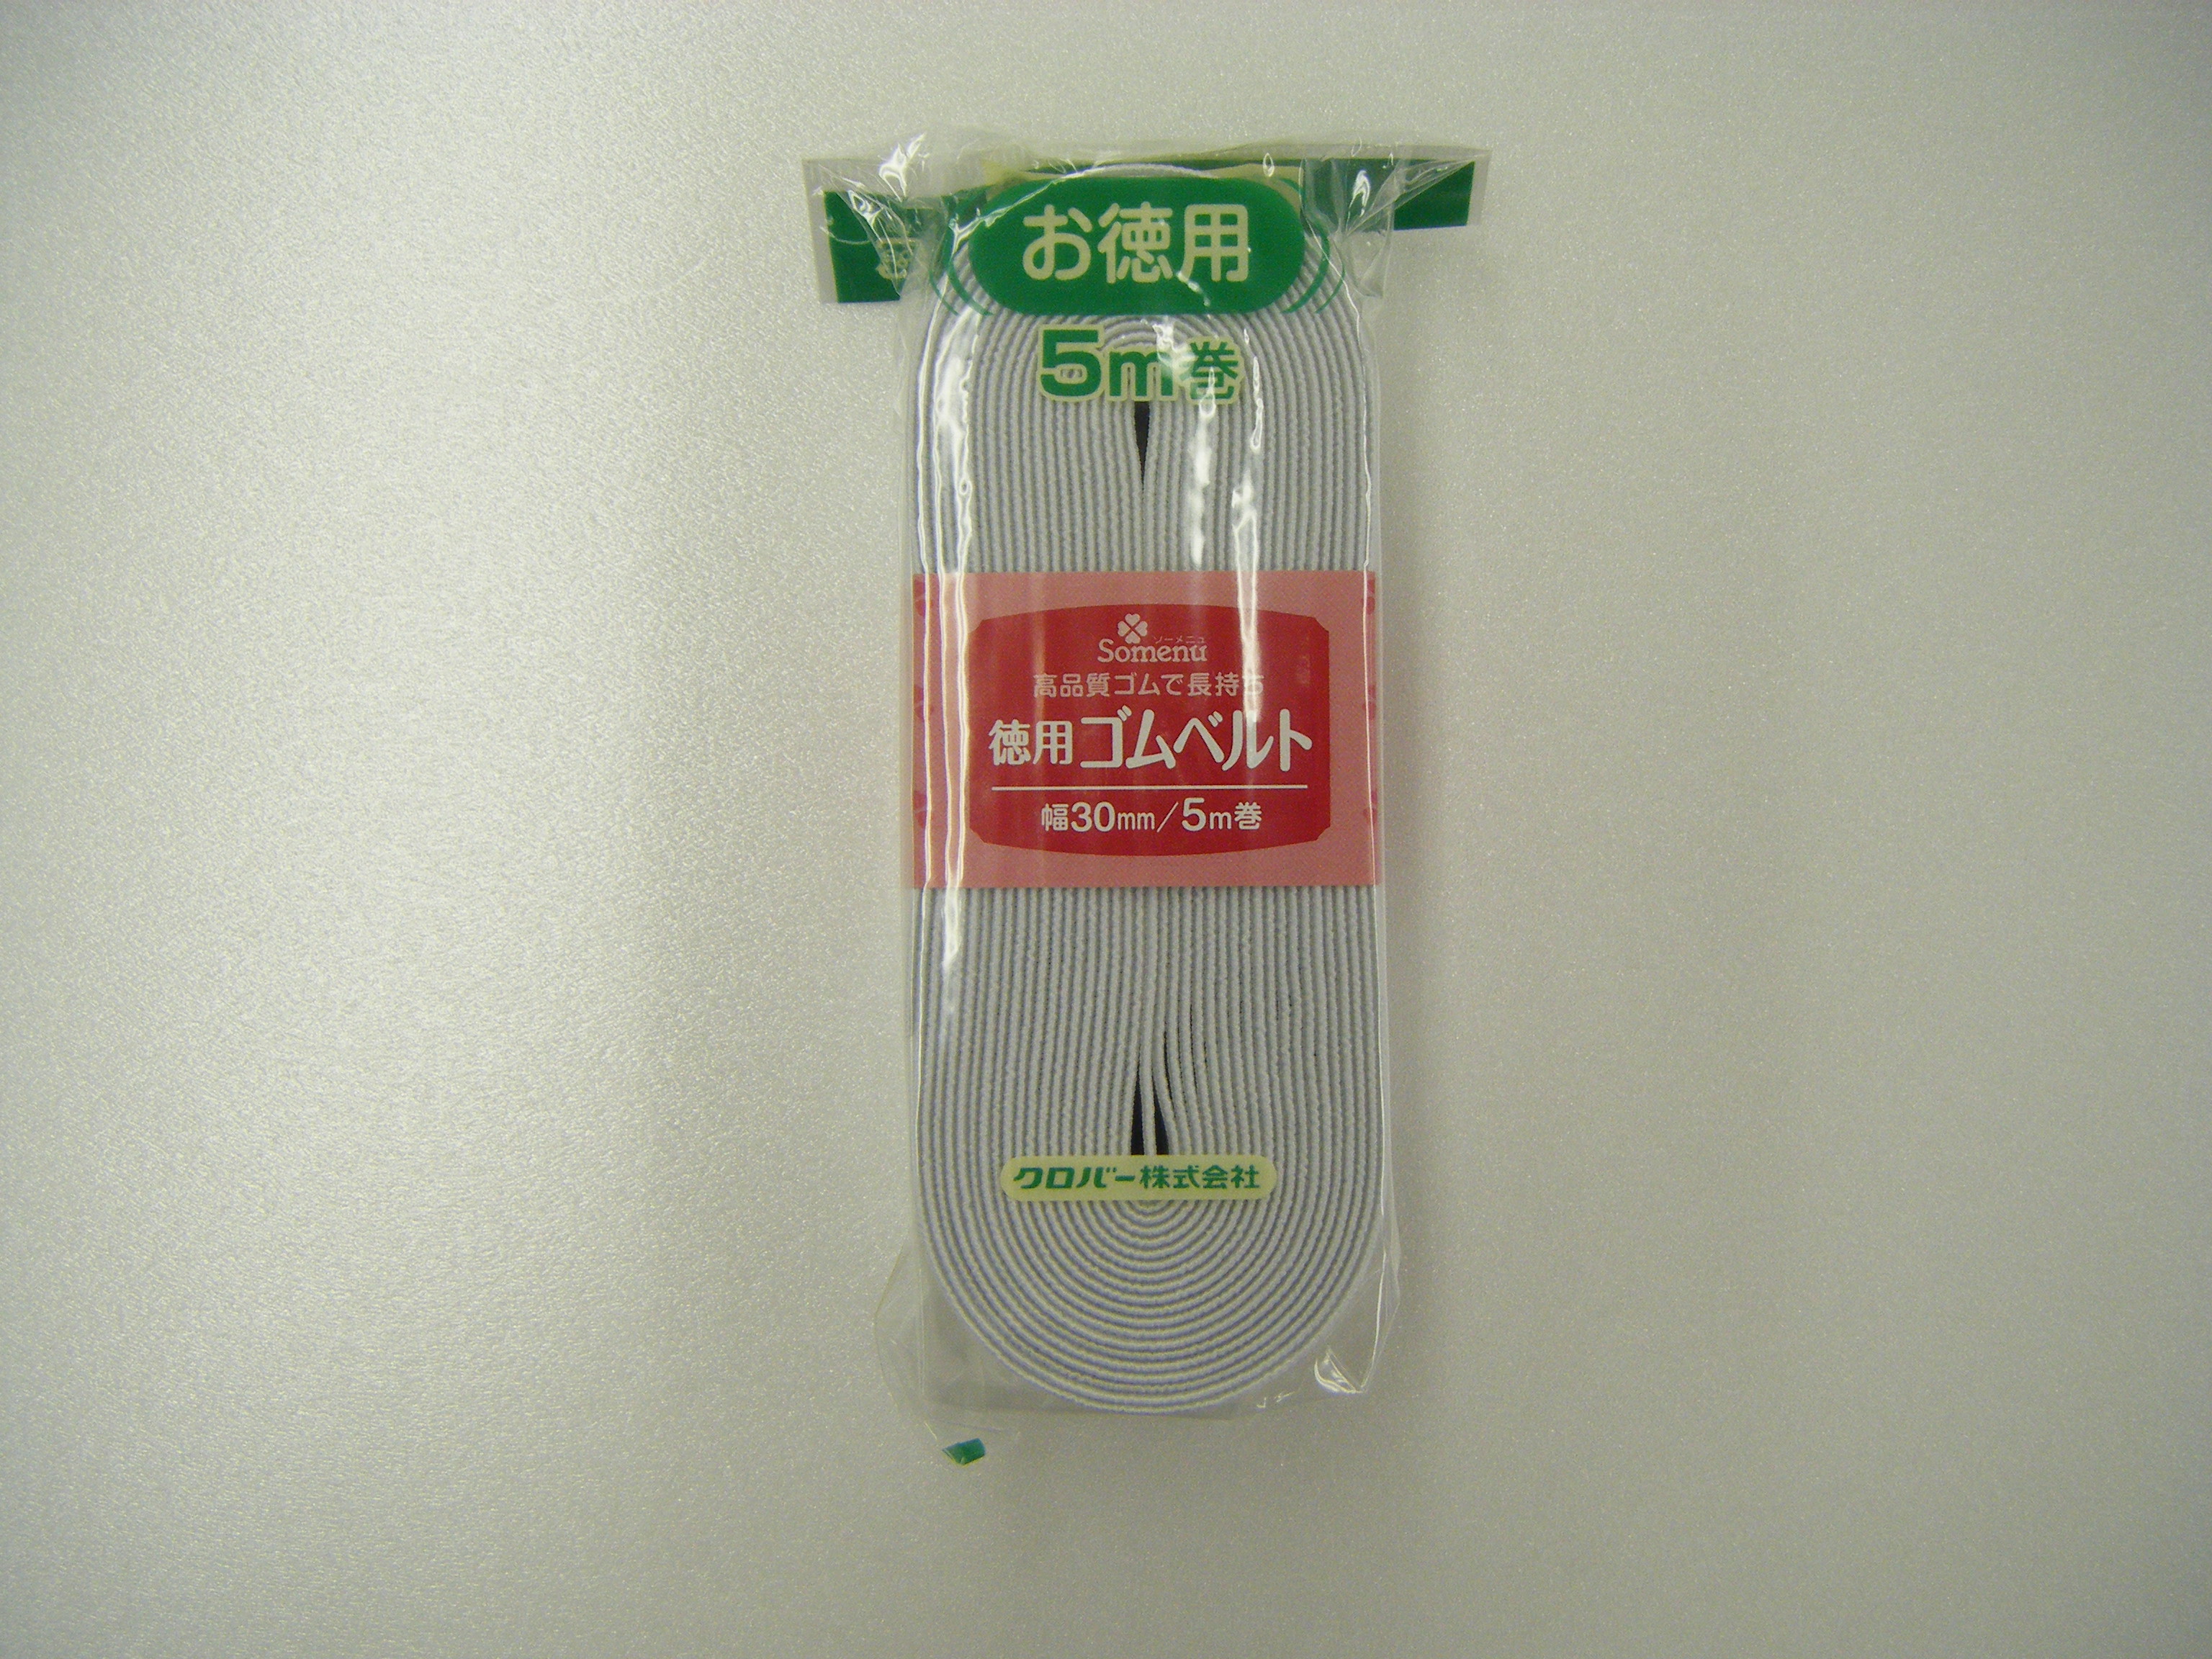 26078 经济型橡胶带<30mm宽度>[工艺品用品] 三叶草